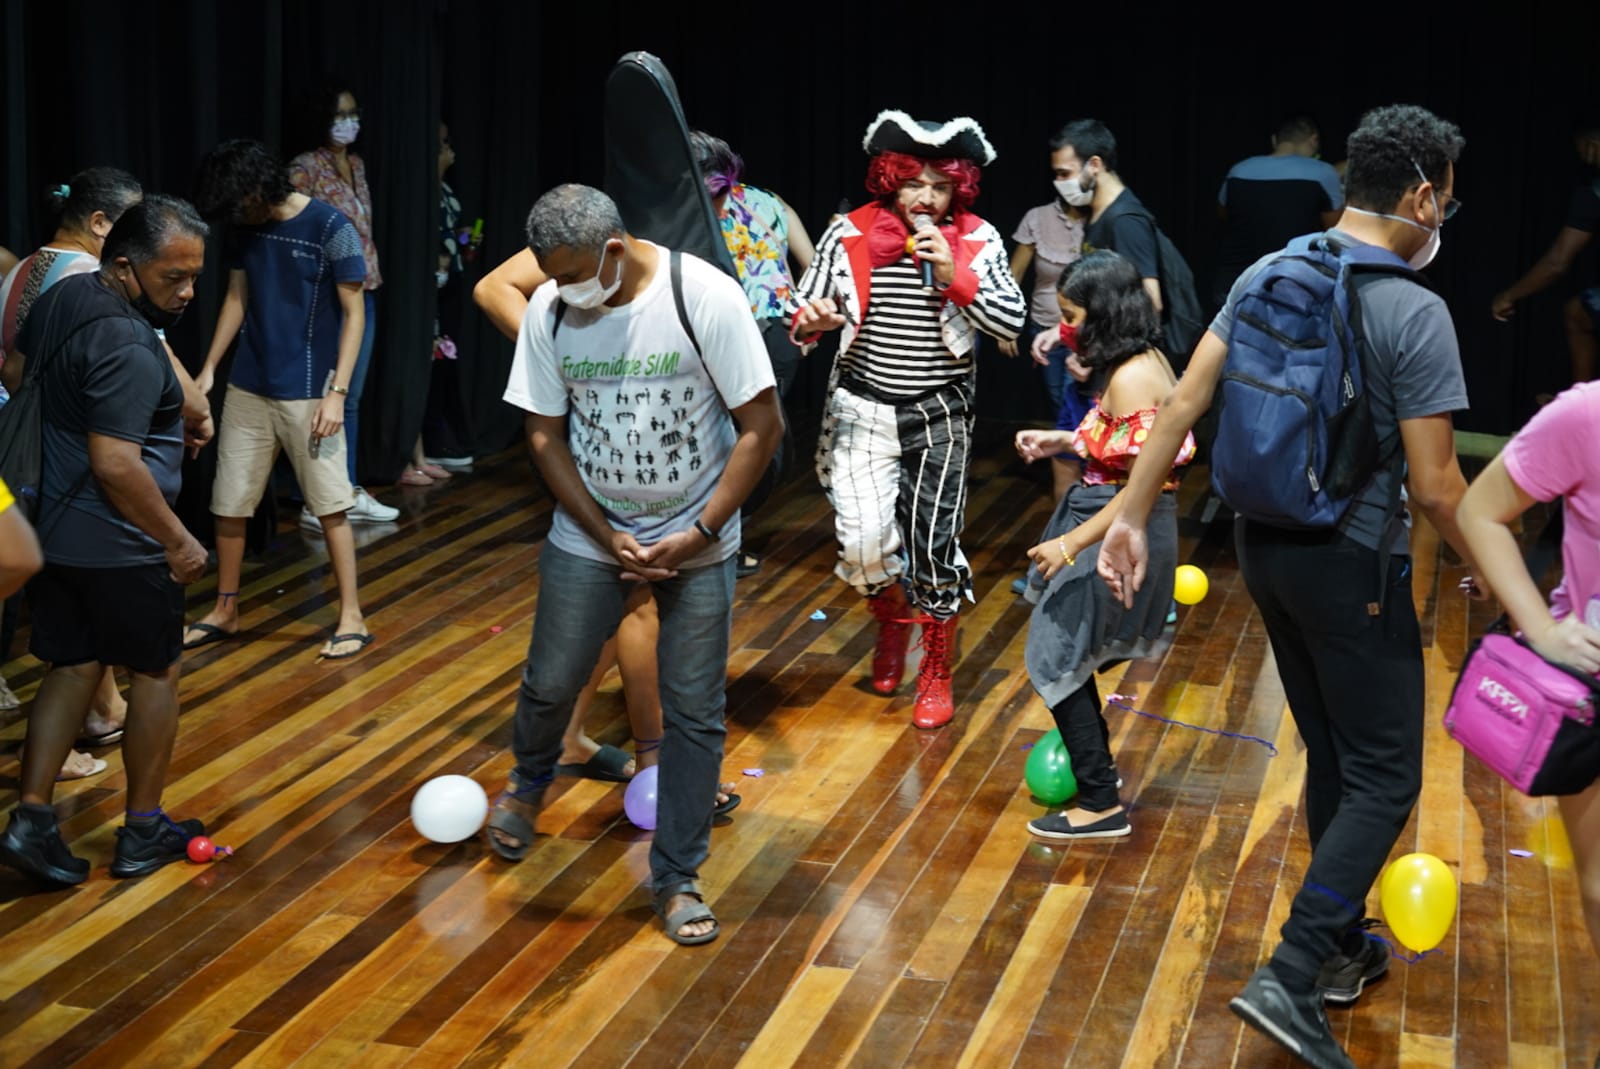 You are currently viewing Prefeitura inicia cursos de música, dança e teatro com acolhida divertida para os novos alunos